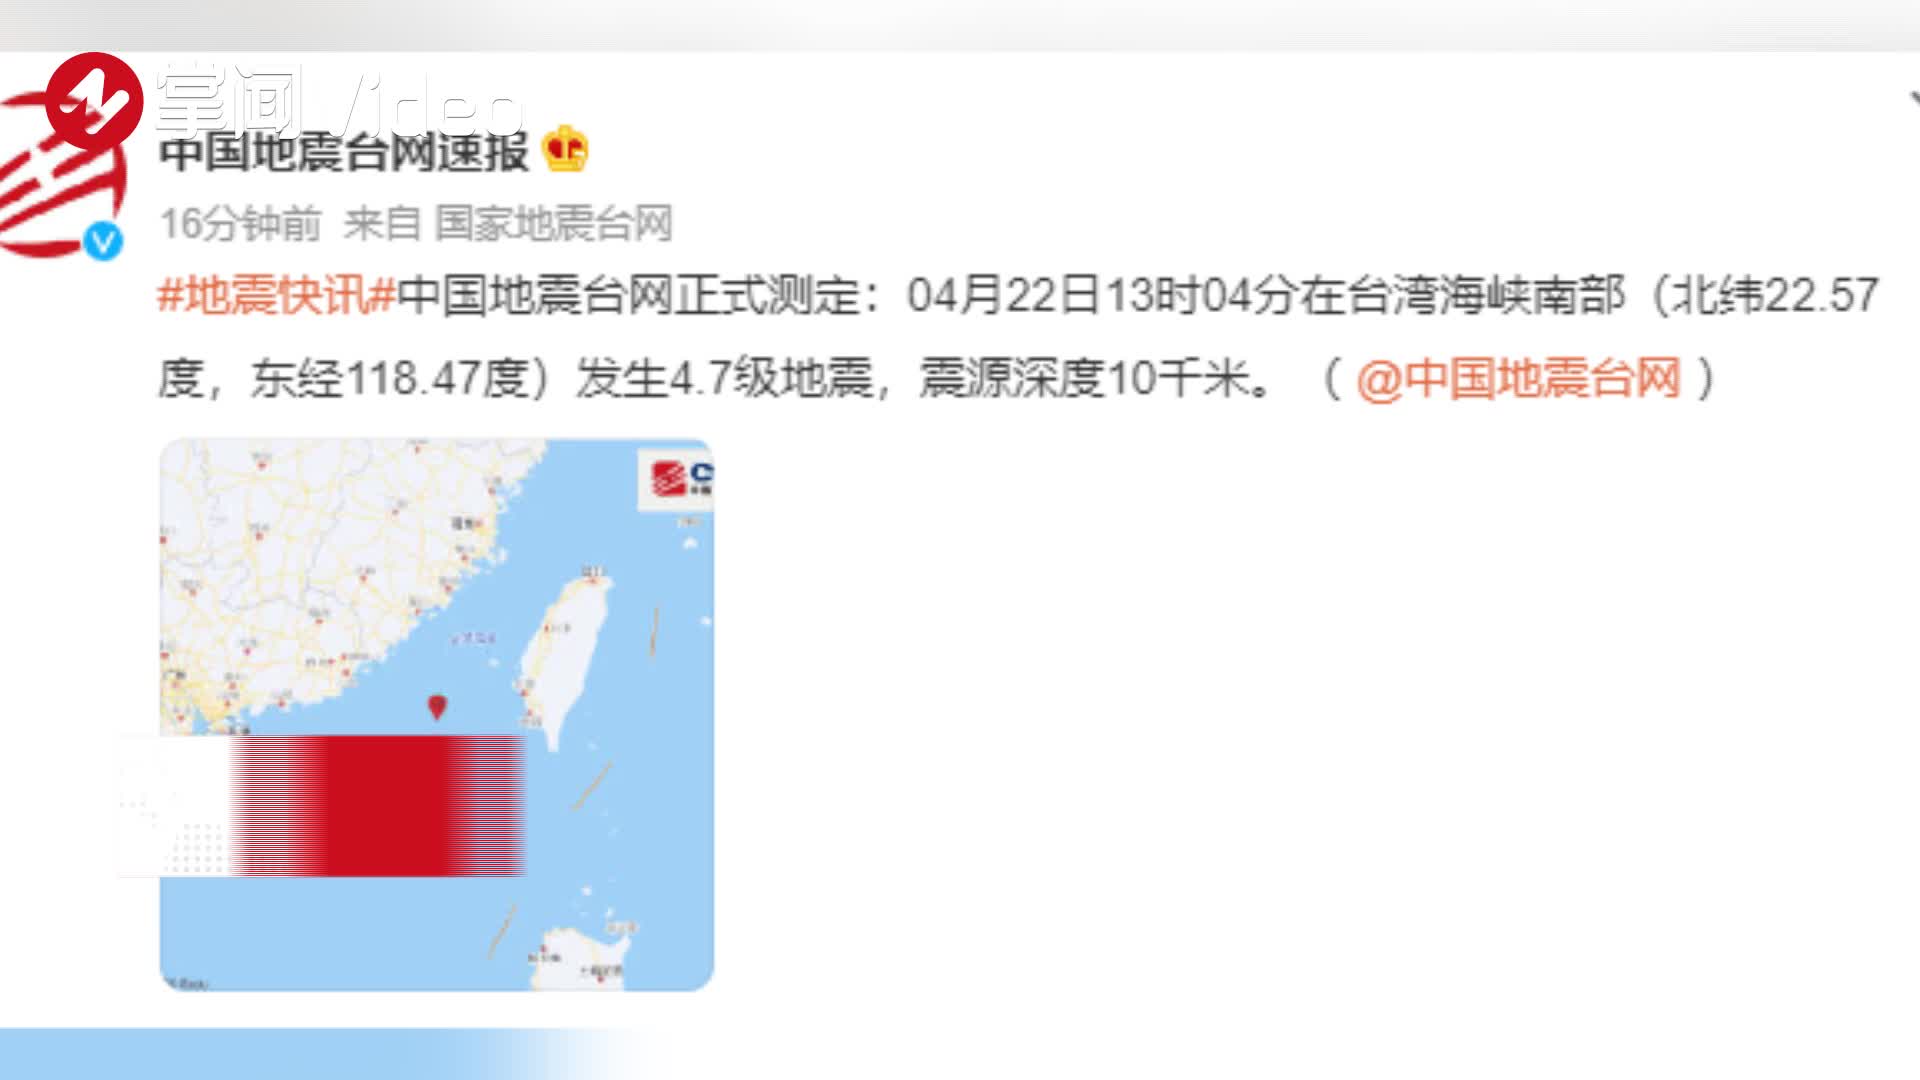 四川长宁6.0级地震，官方解读来了 - 新闻速递 - 矿冶园 - 矿冶园科技资源共享平台